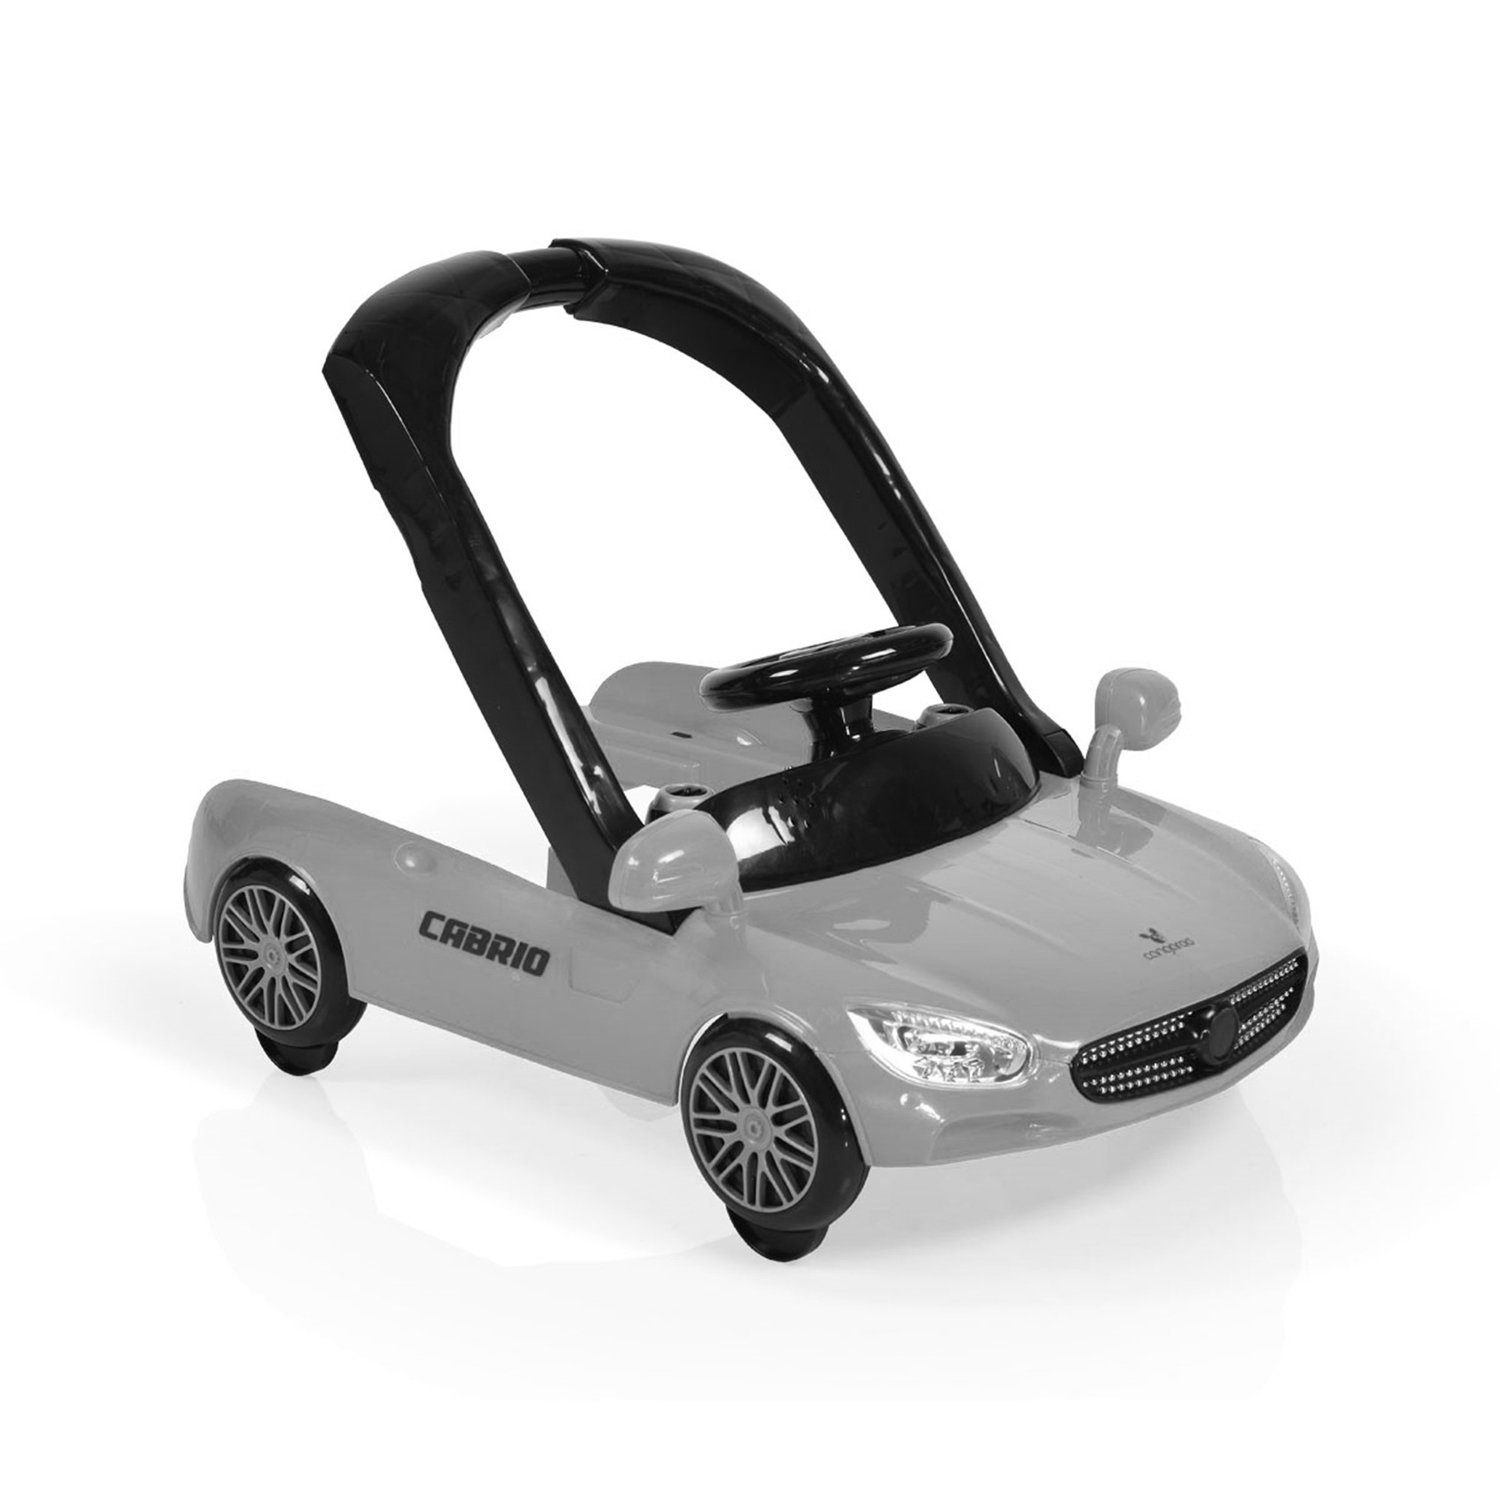 höhenverstellbar Auto-Design weiß in1, 2 Licht schwarz Lauflernhilfe mit Armaturenbrett Cabrio Lauflernhilfe Cangaroo